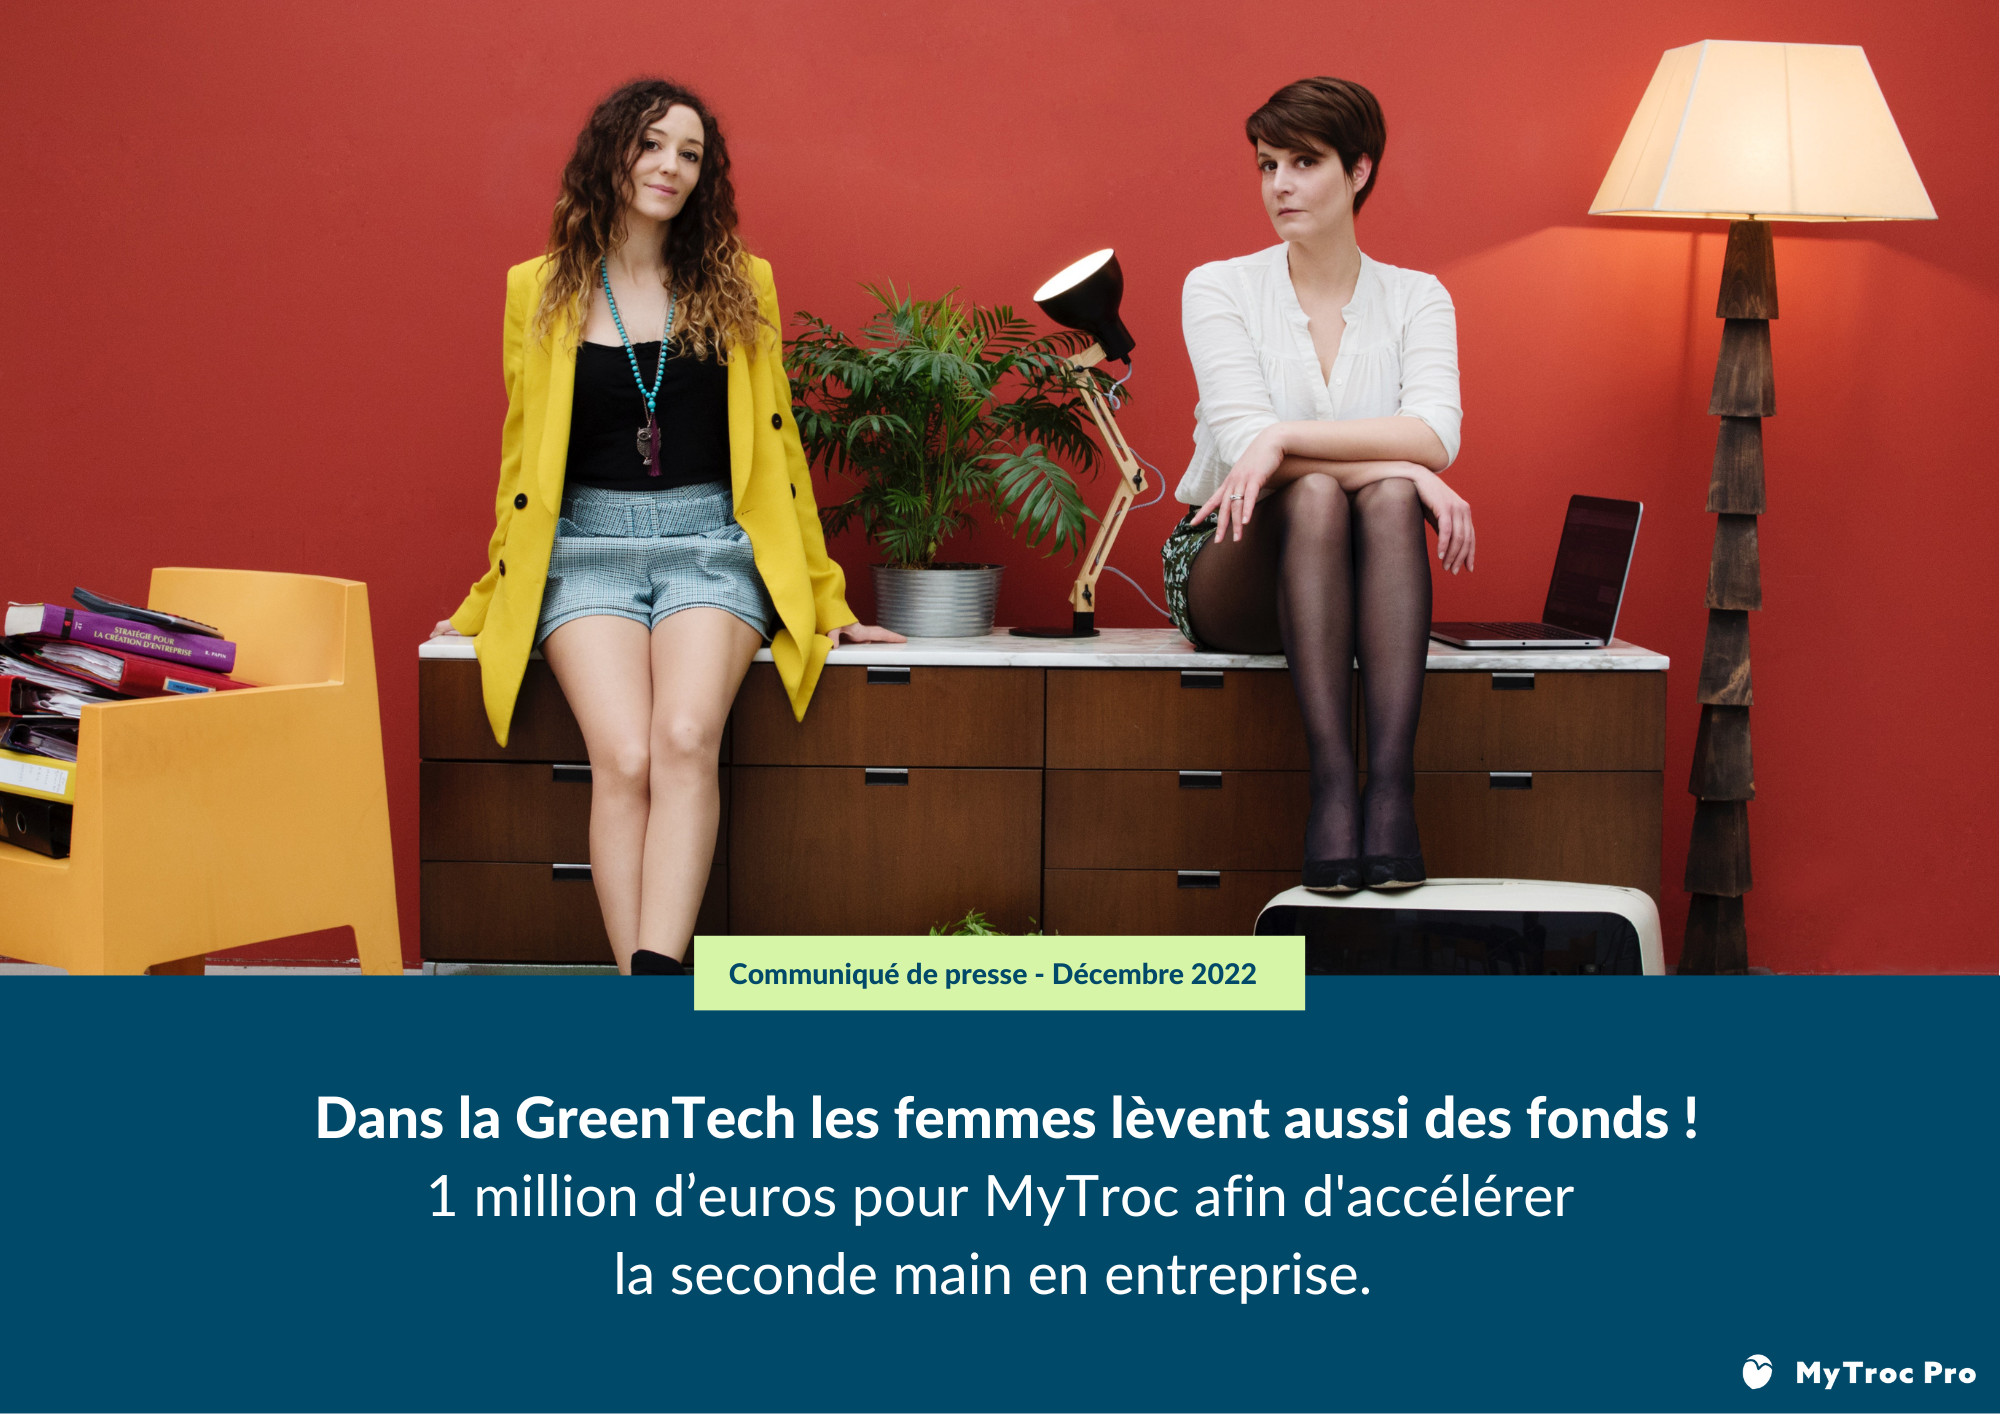 Dans la GreenTech les femmes lèvent aussi des fonds ! – Communiqué de presse MyTroc du 08/12/2022